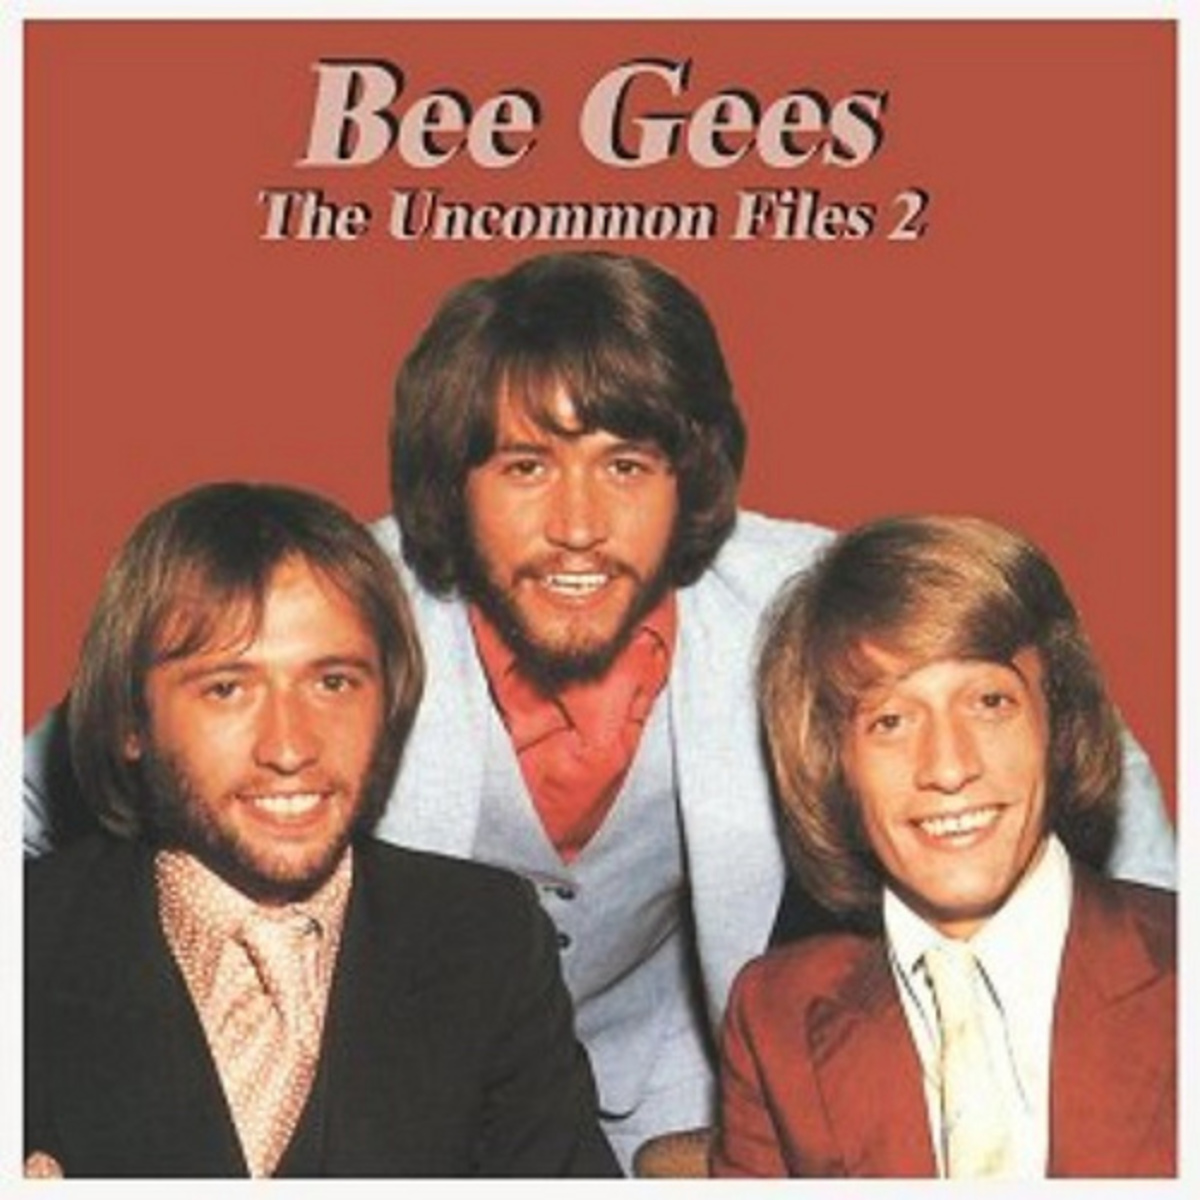 Σε κώμα ο τραγουδιστης των Bee Gees